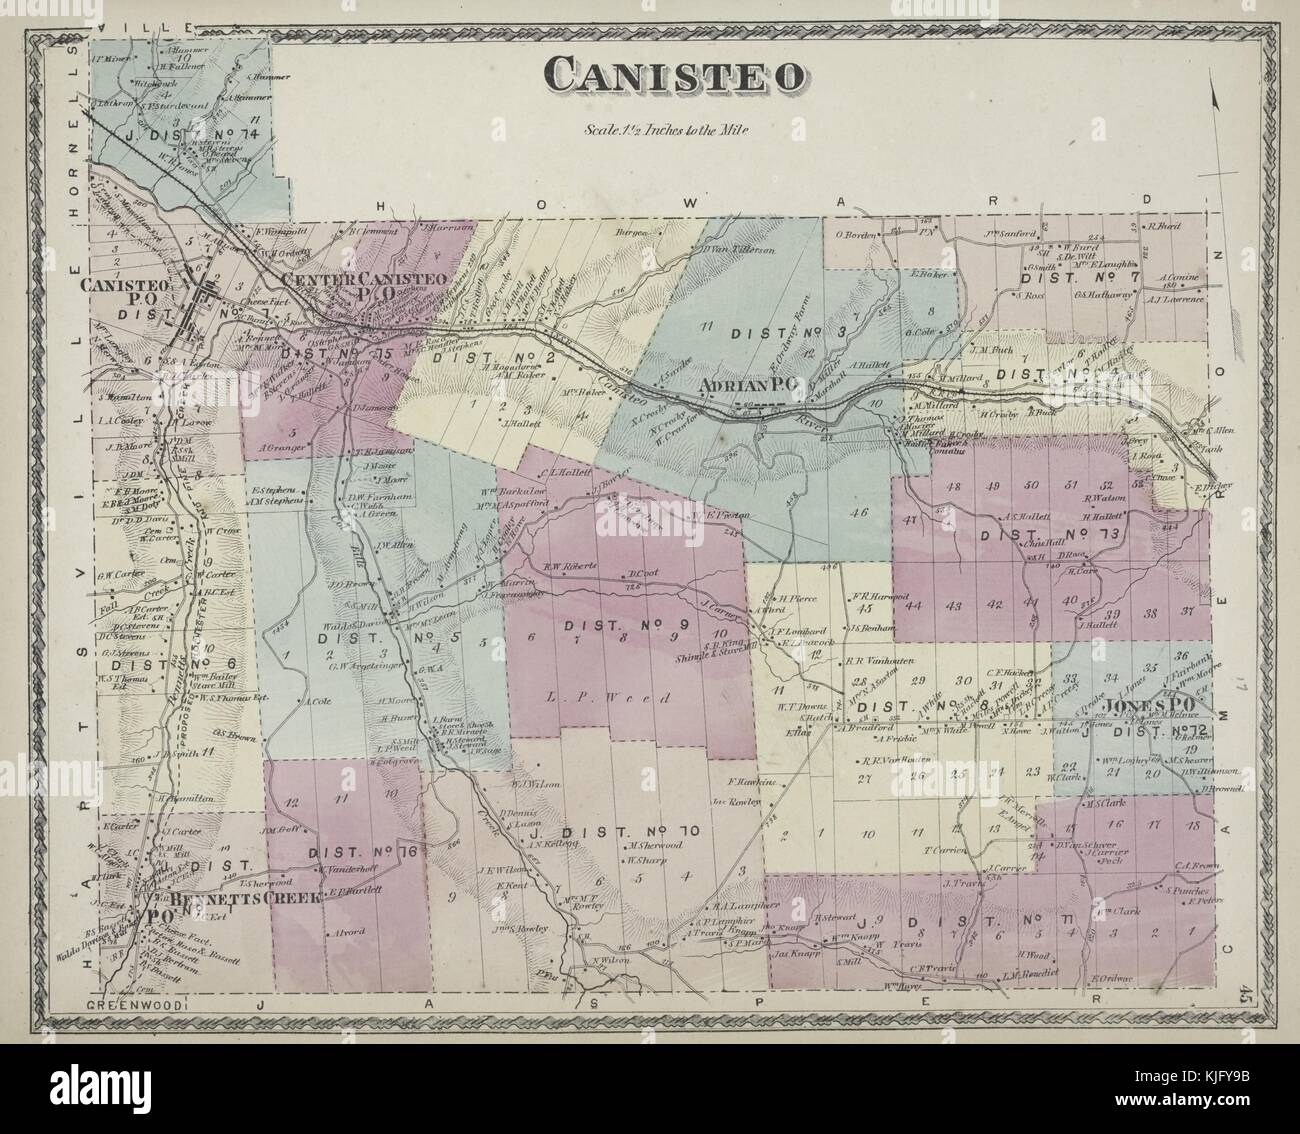 Image cartographique gravée d'un atlas, avec légende originale indiquant 'Canisteo Township', 1873. De la Bibliothèque publique de New York. Banque D'Images